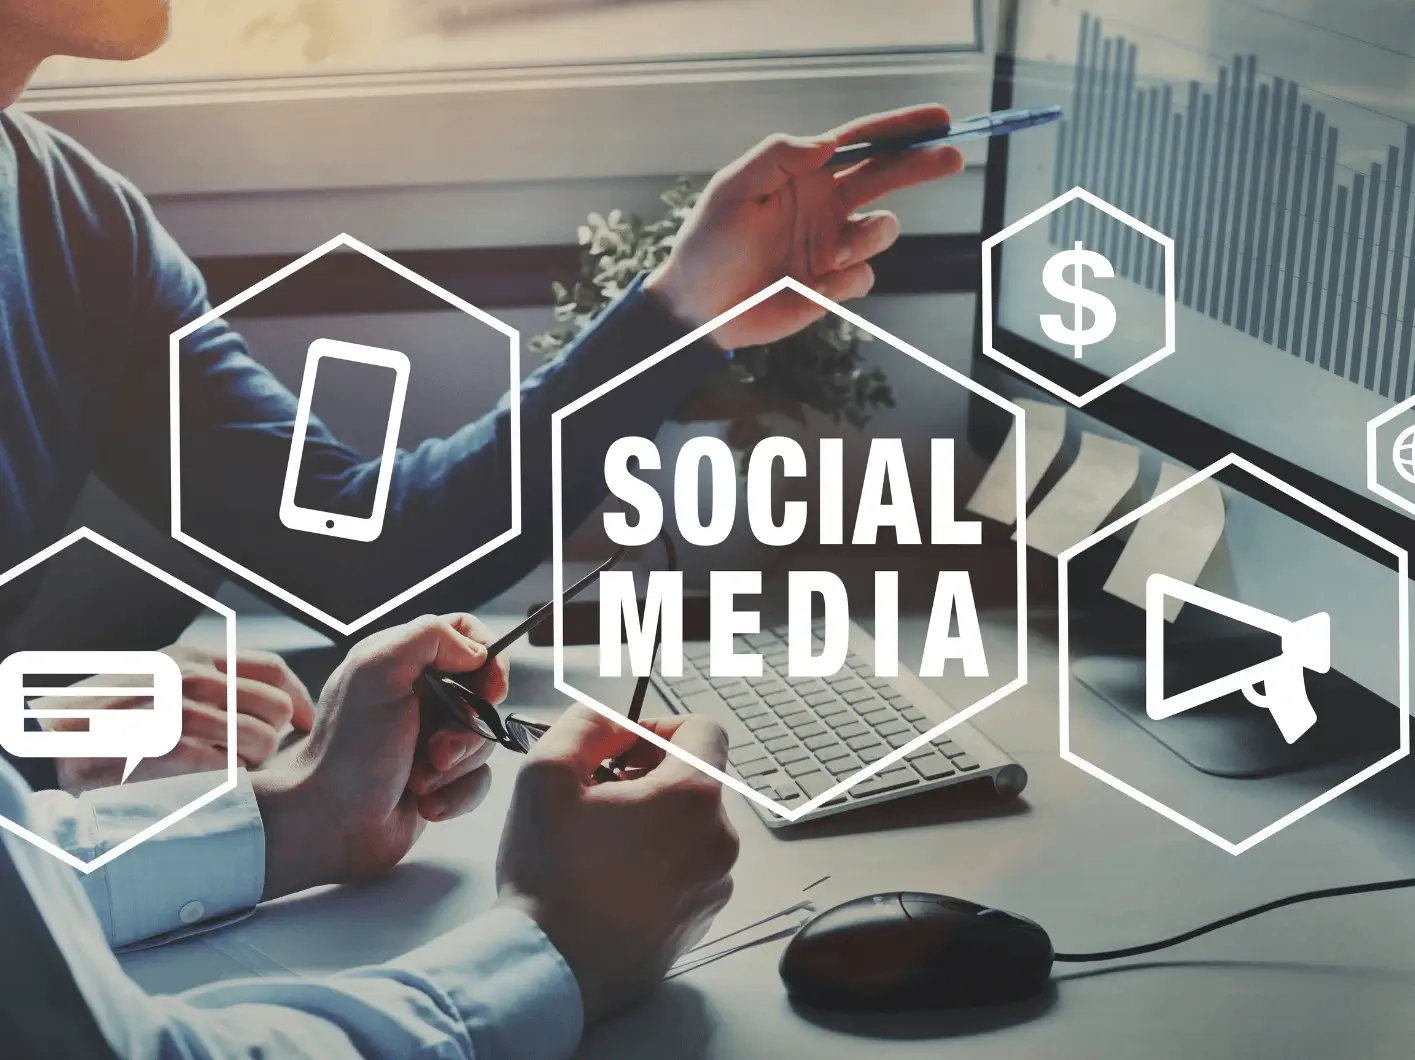 Social Media Marketing SMM